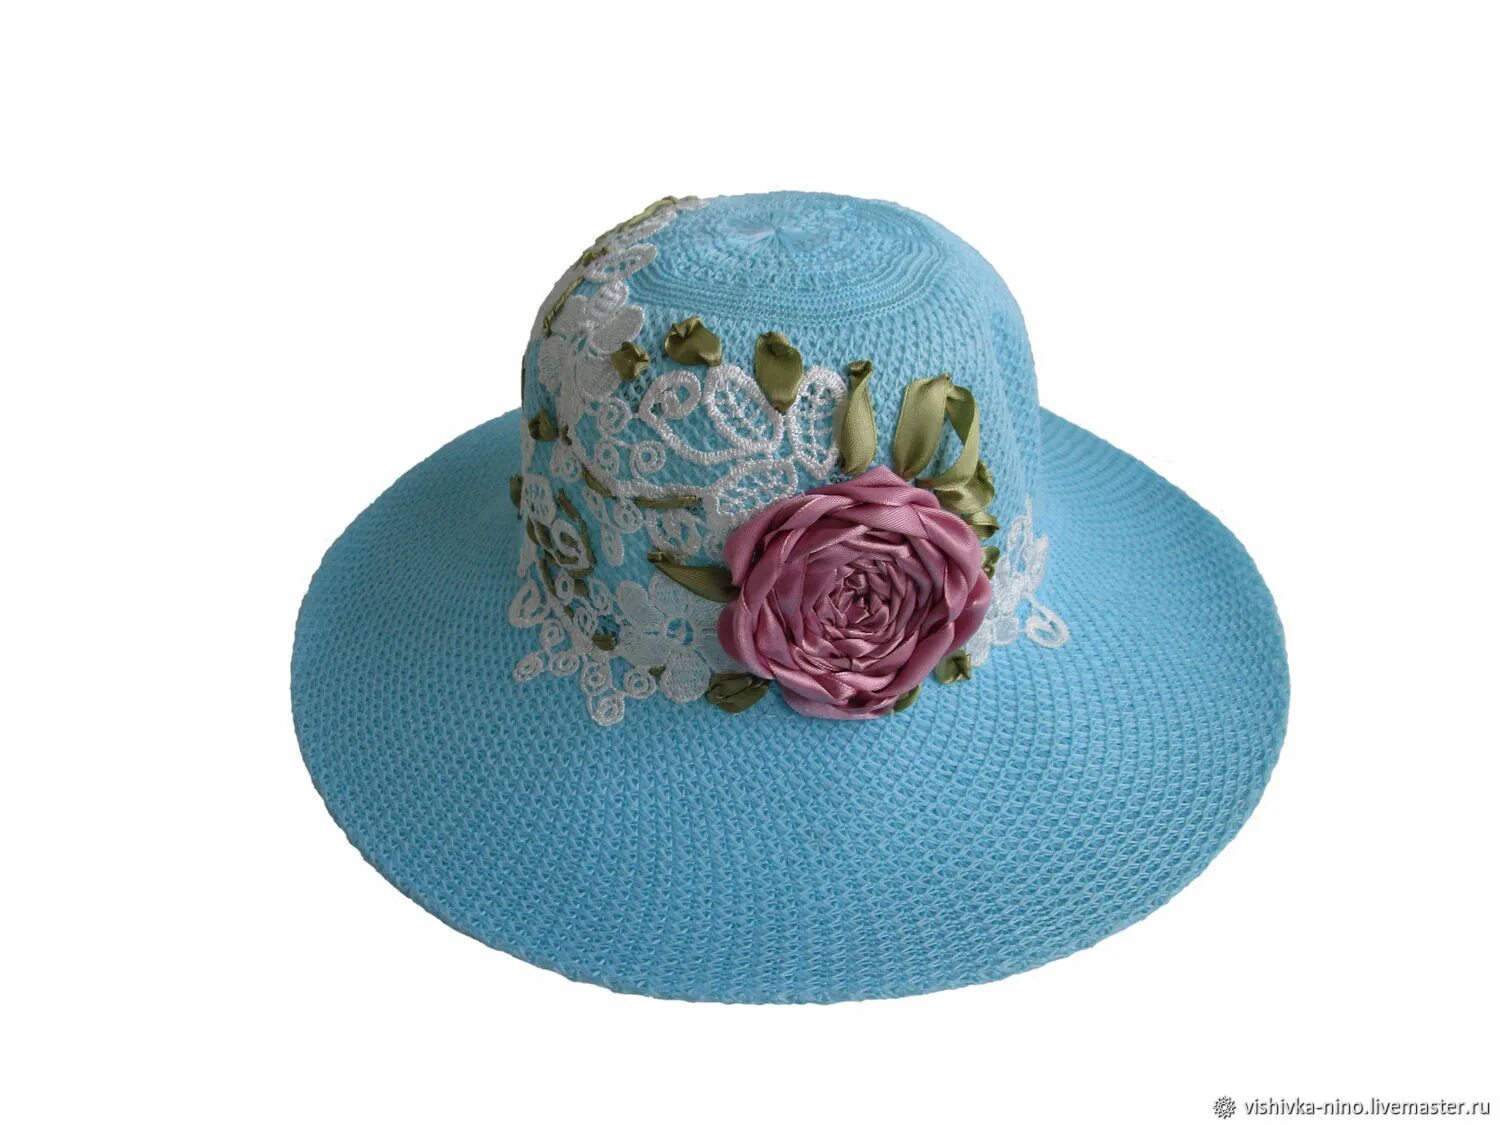 Как украсить шляпку. S20-11407 707 шляпа женская 56. Шляпка. Украшение для шляпы. Дамская шляпка.